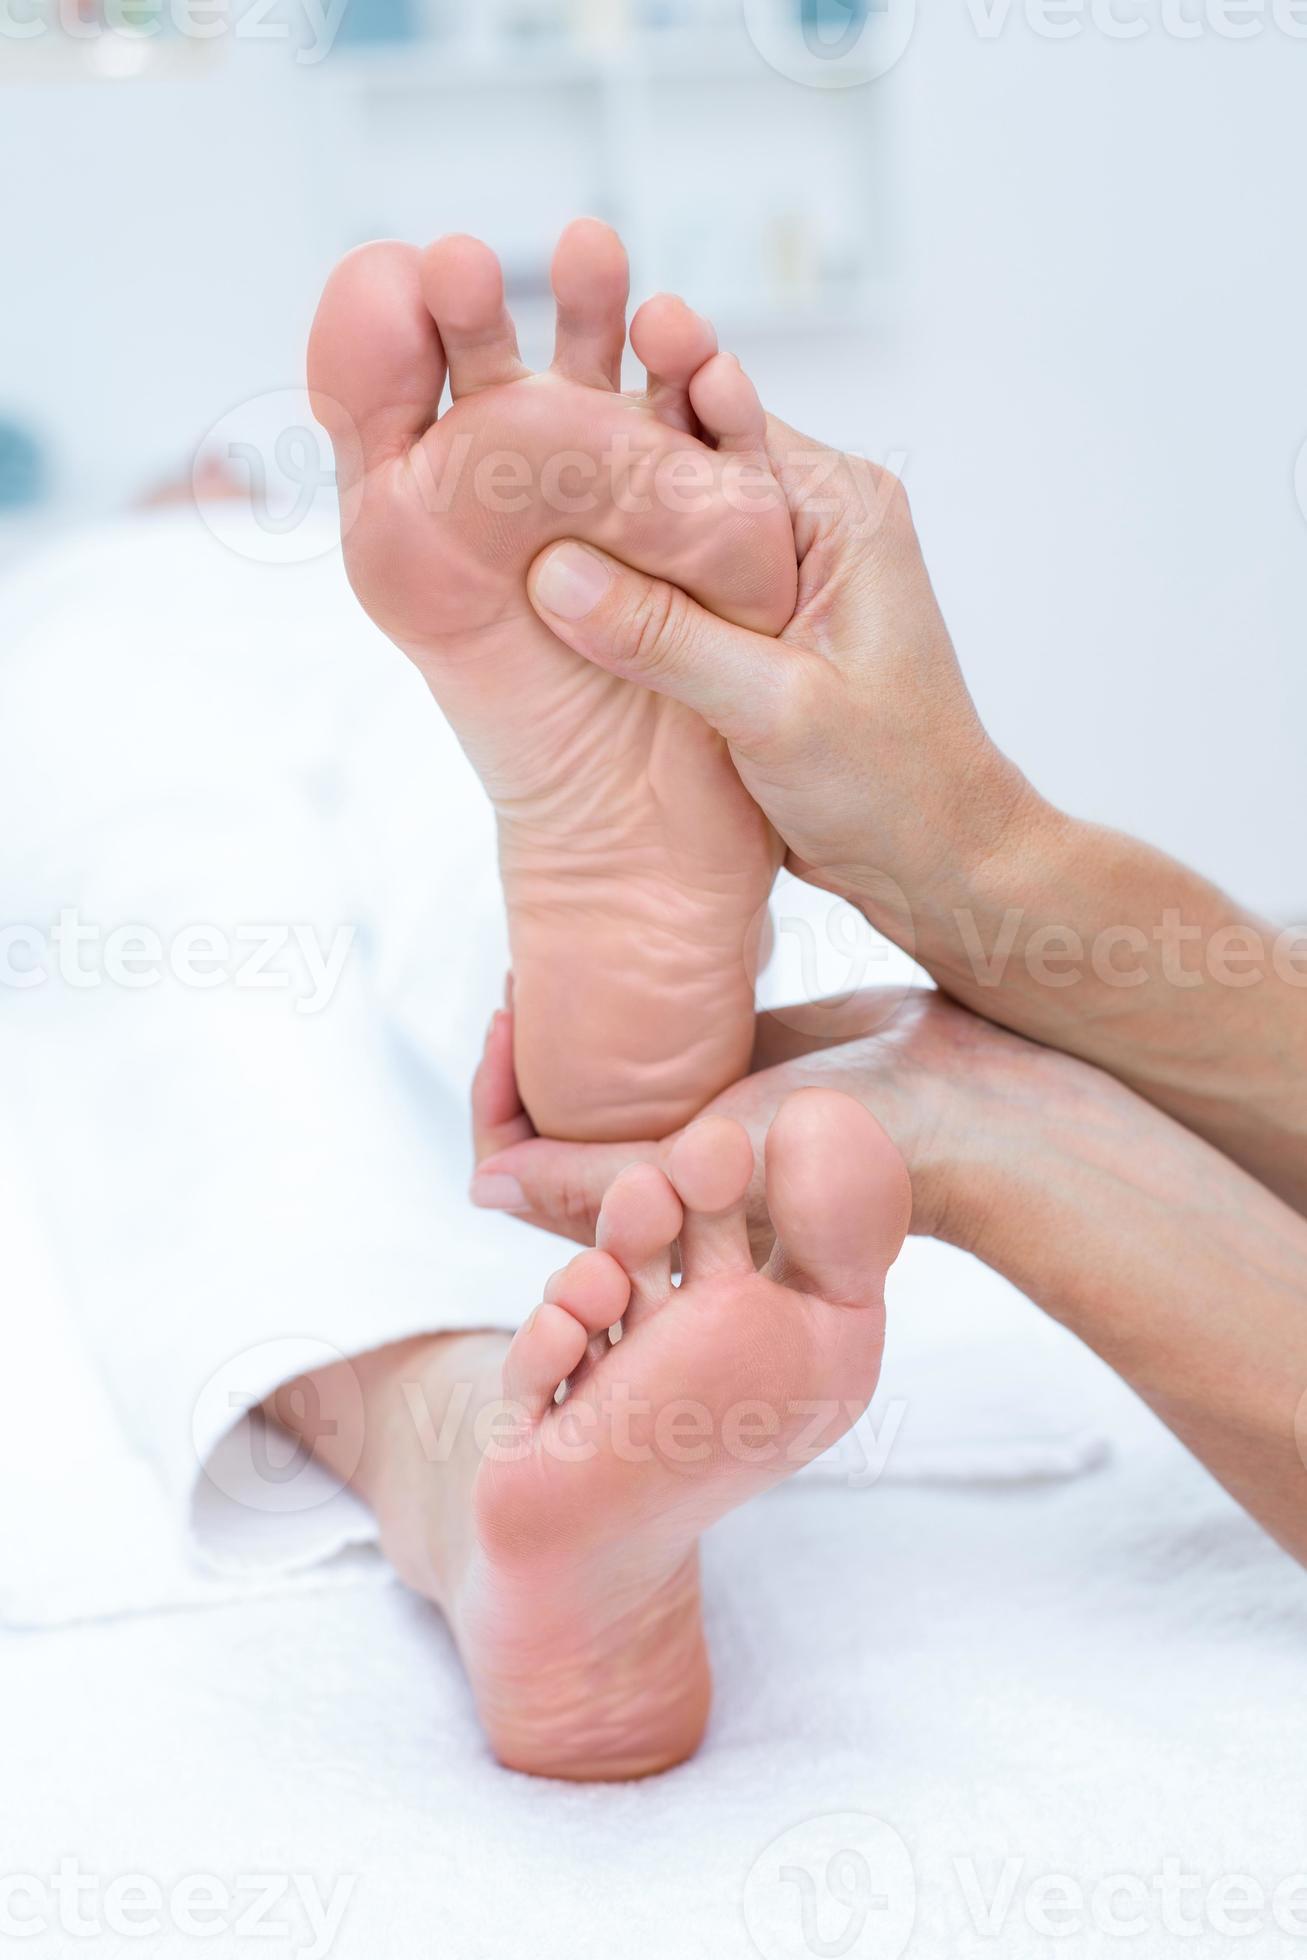 physiothérapeute faisant massage des pieds photo